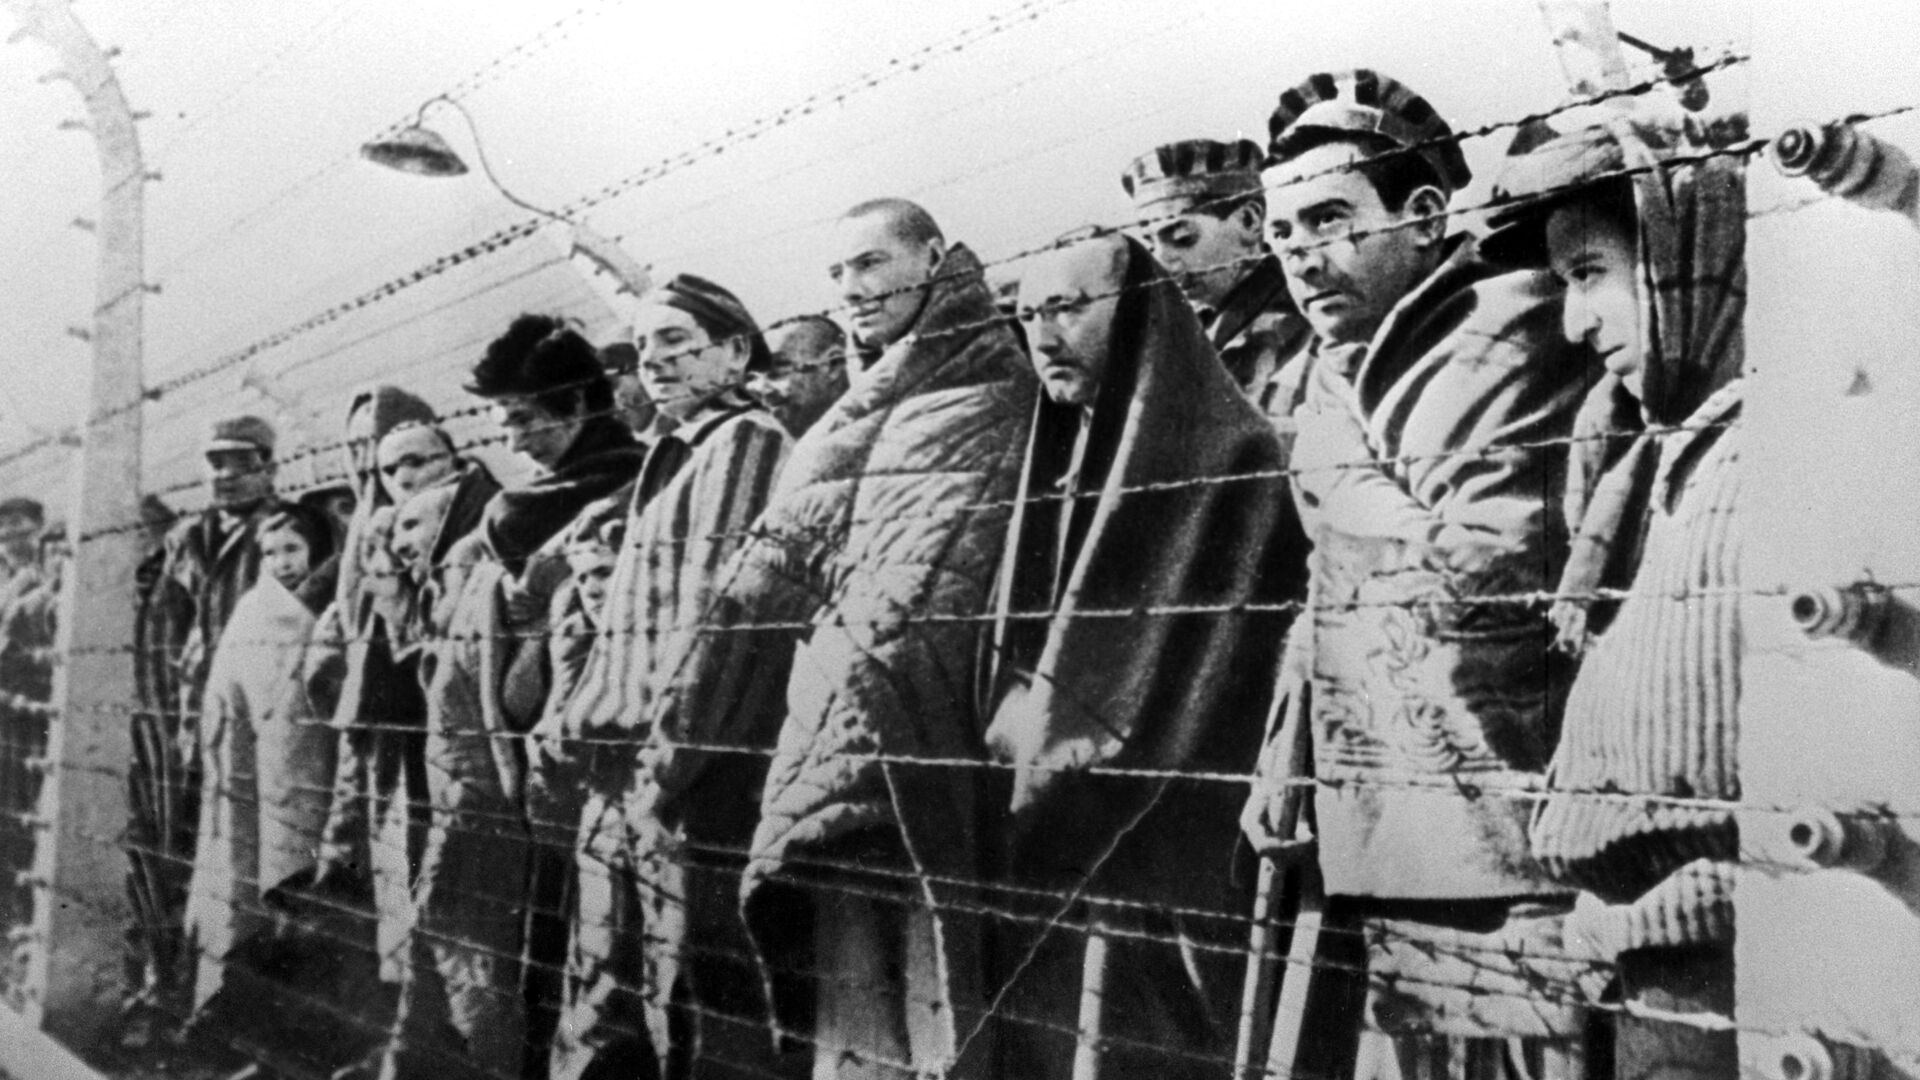 Узники концентрационного лагеря Освенцим, освобожденные войсками Красной армии в январе 1945 года - Sputnik Узбекистан, 1920, 19.10.2021